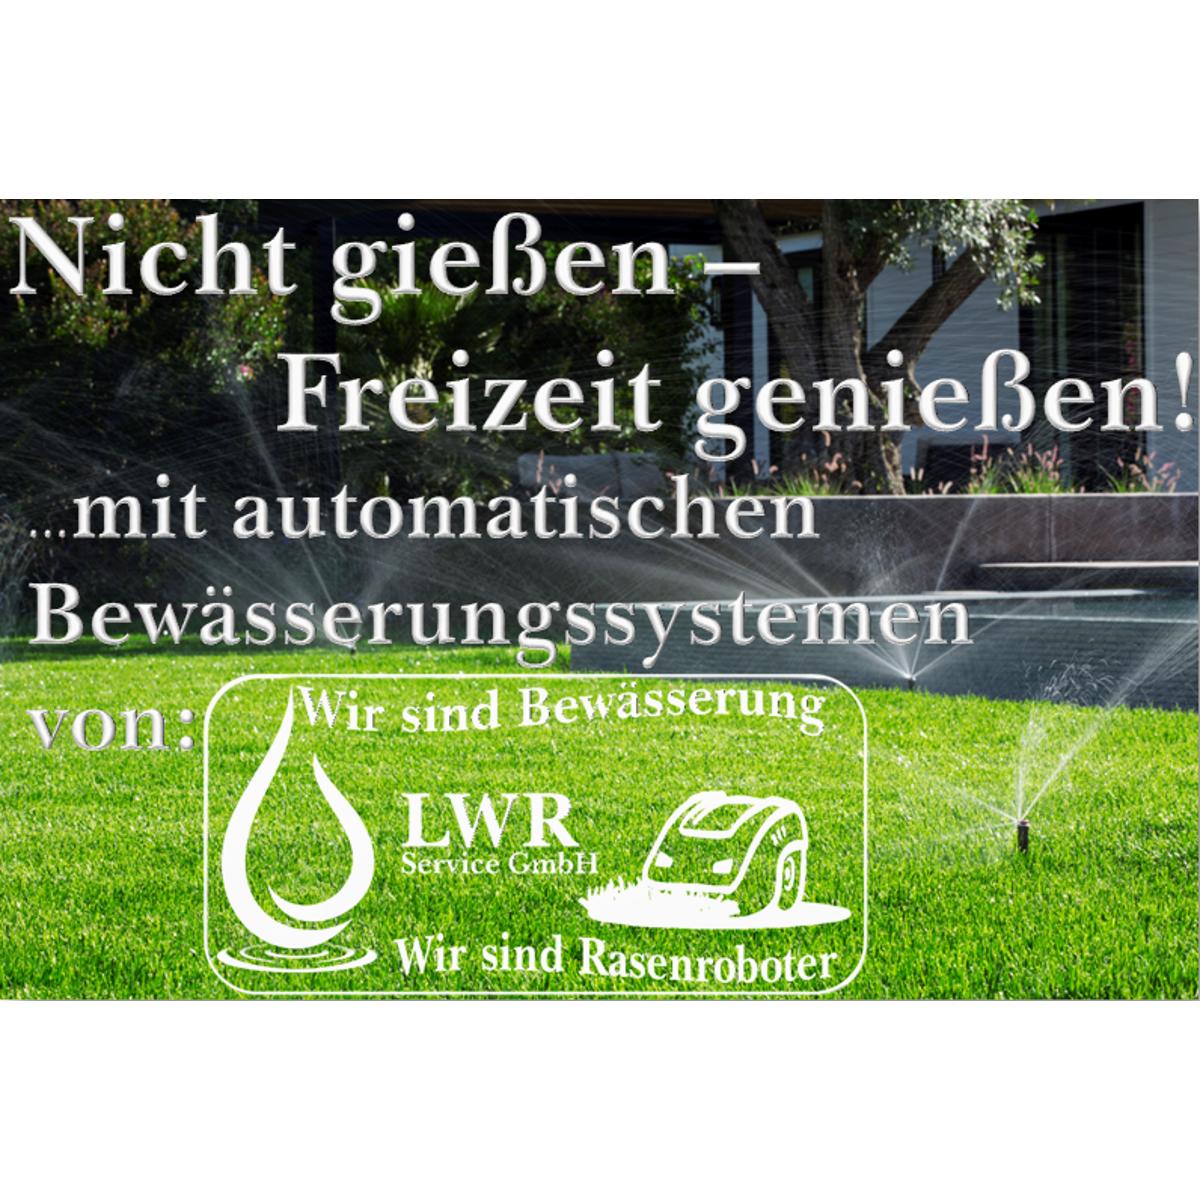 Bilder LWR Service GmbH